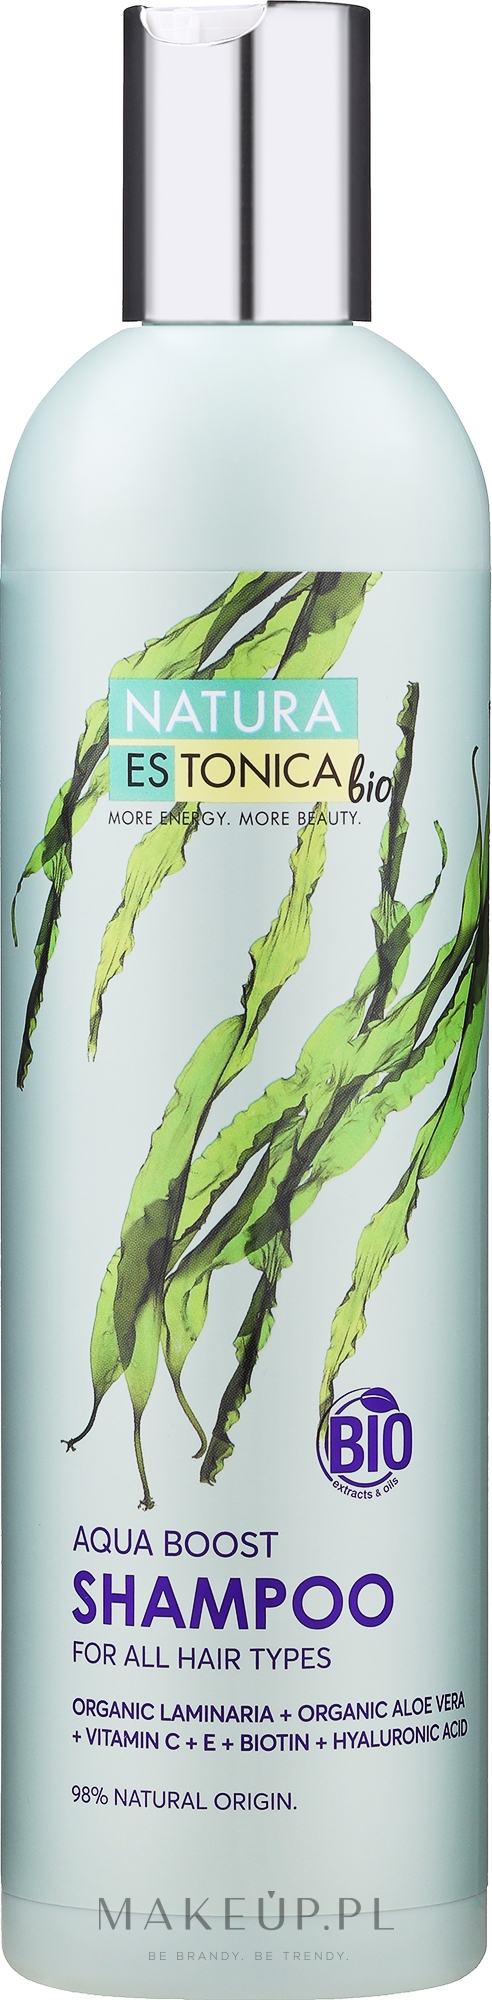 Wzmacniający szampon do włosów farbowanych - Natura Estonica Bio Aqua Boost Shampoo — Zdjęcie 400 ml